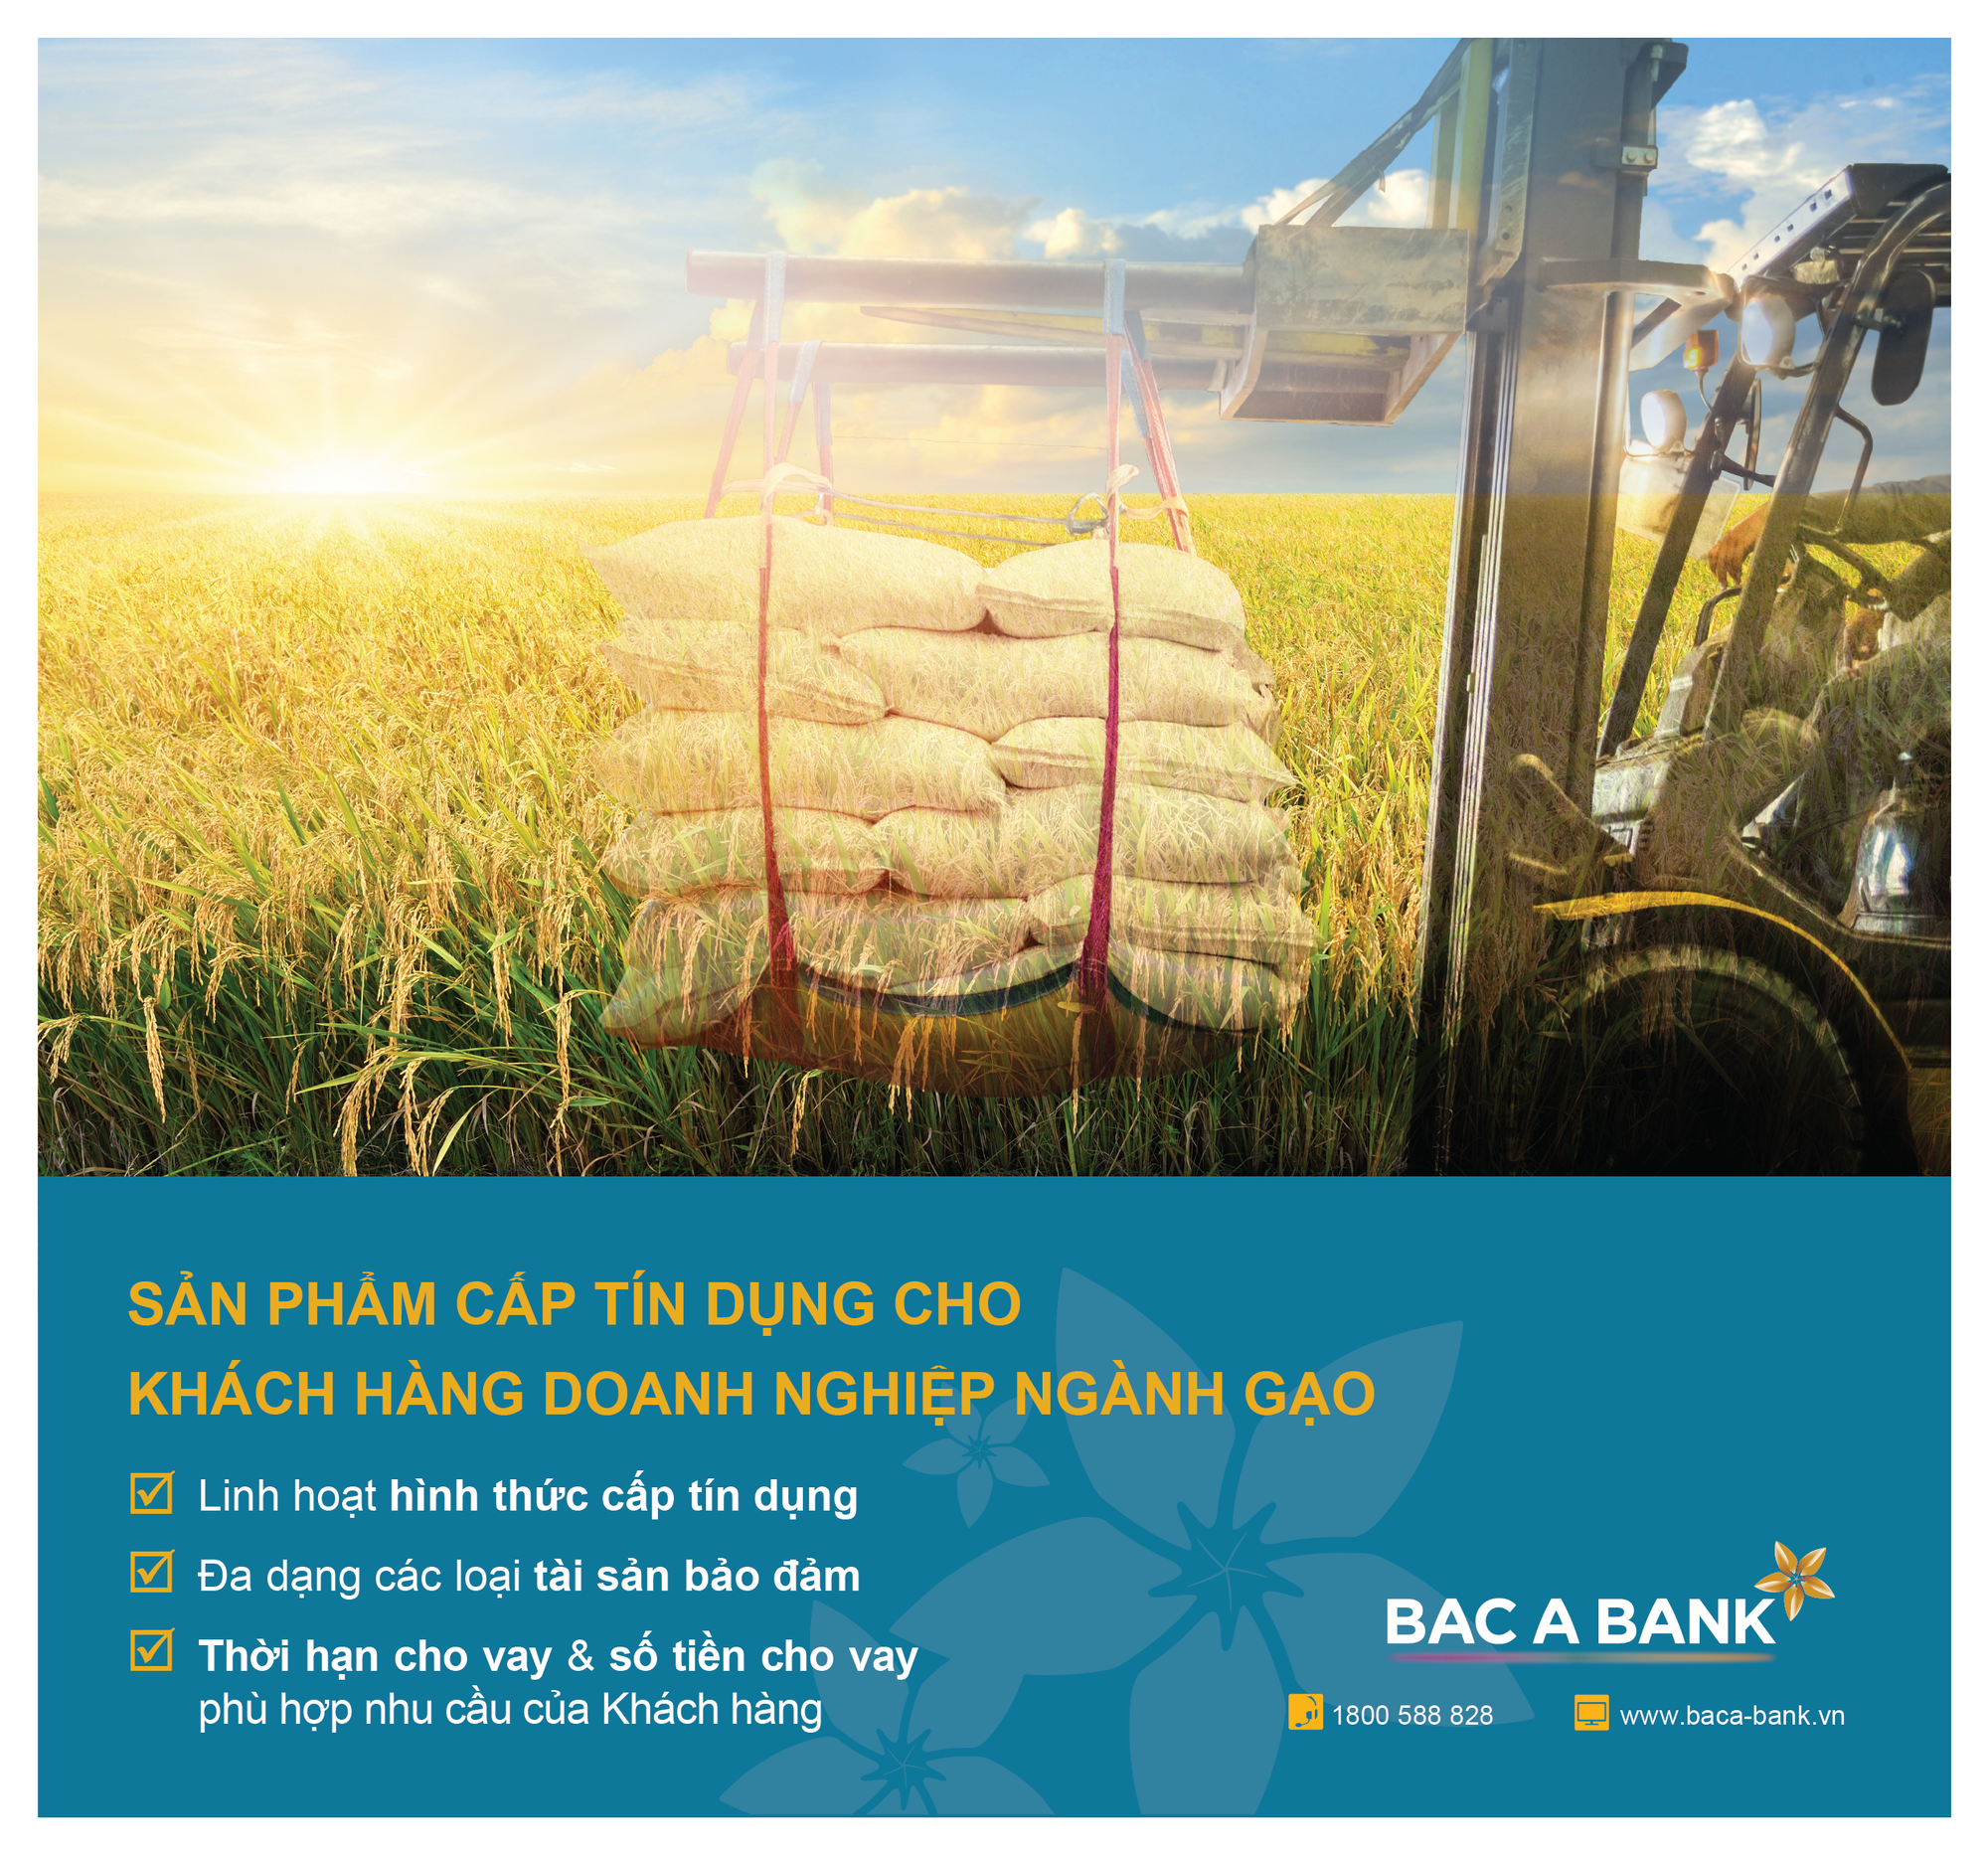 Doanh nghiệp ngành gạo đón trợ lực từ BAC A BANK - Ảnh 1.